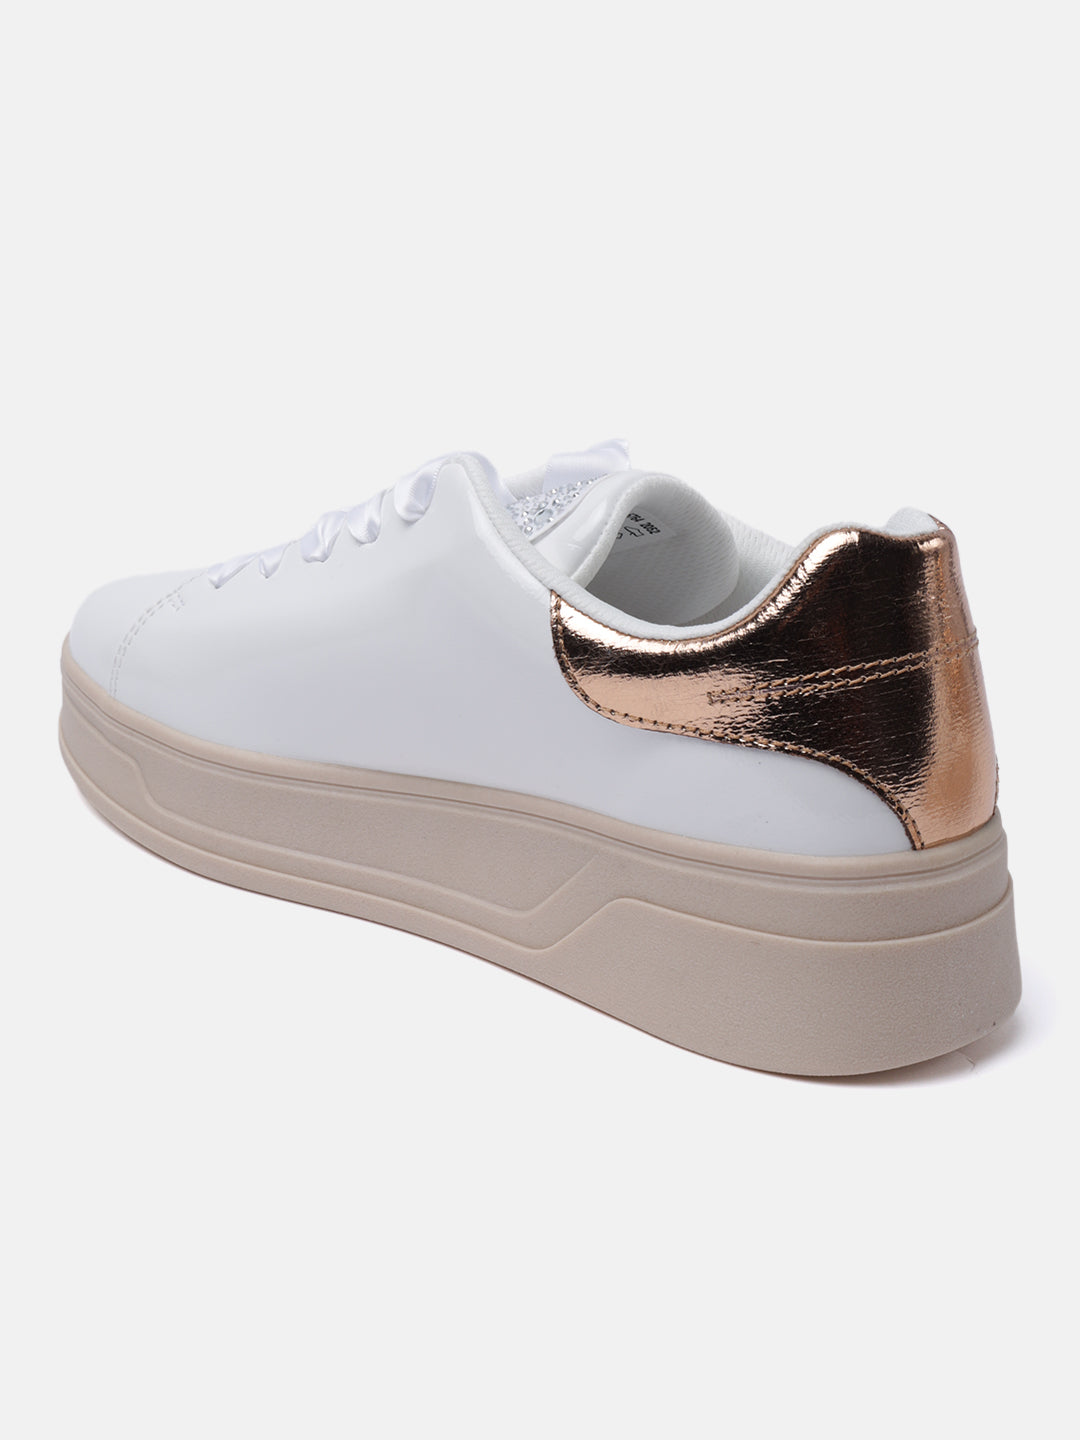 Piper Evo White & Beige Sneakers